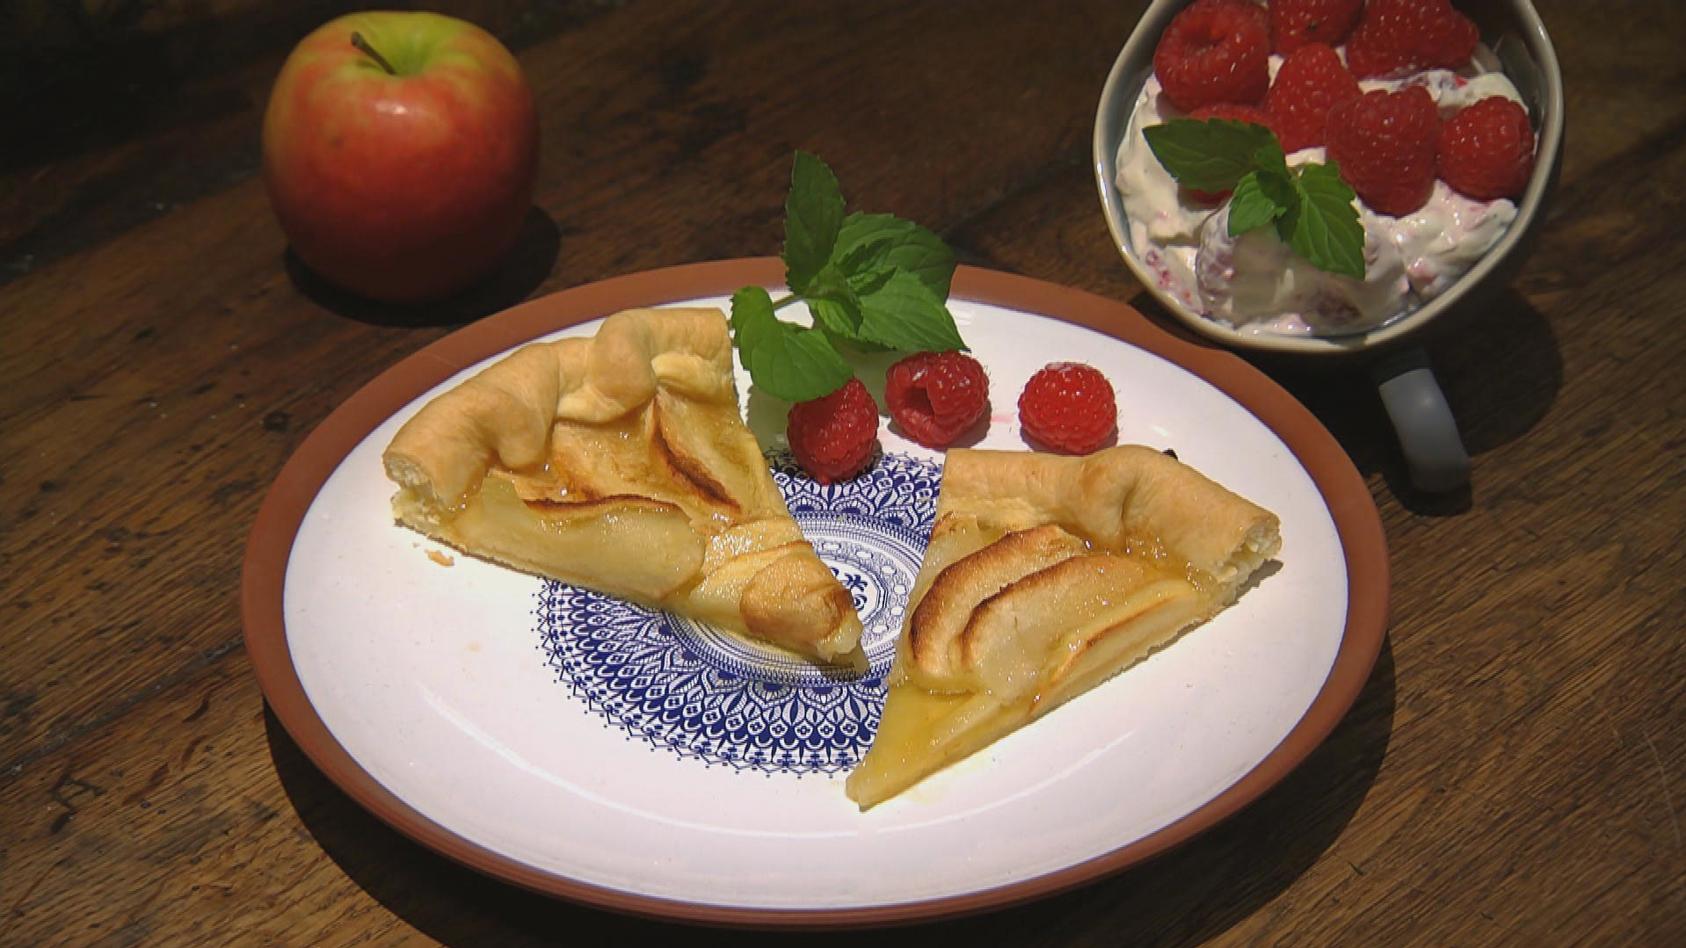  Apfel-Tarte mit Himbeercreme: das Dessert von Meta Hiltebrand und Ronny Loll